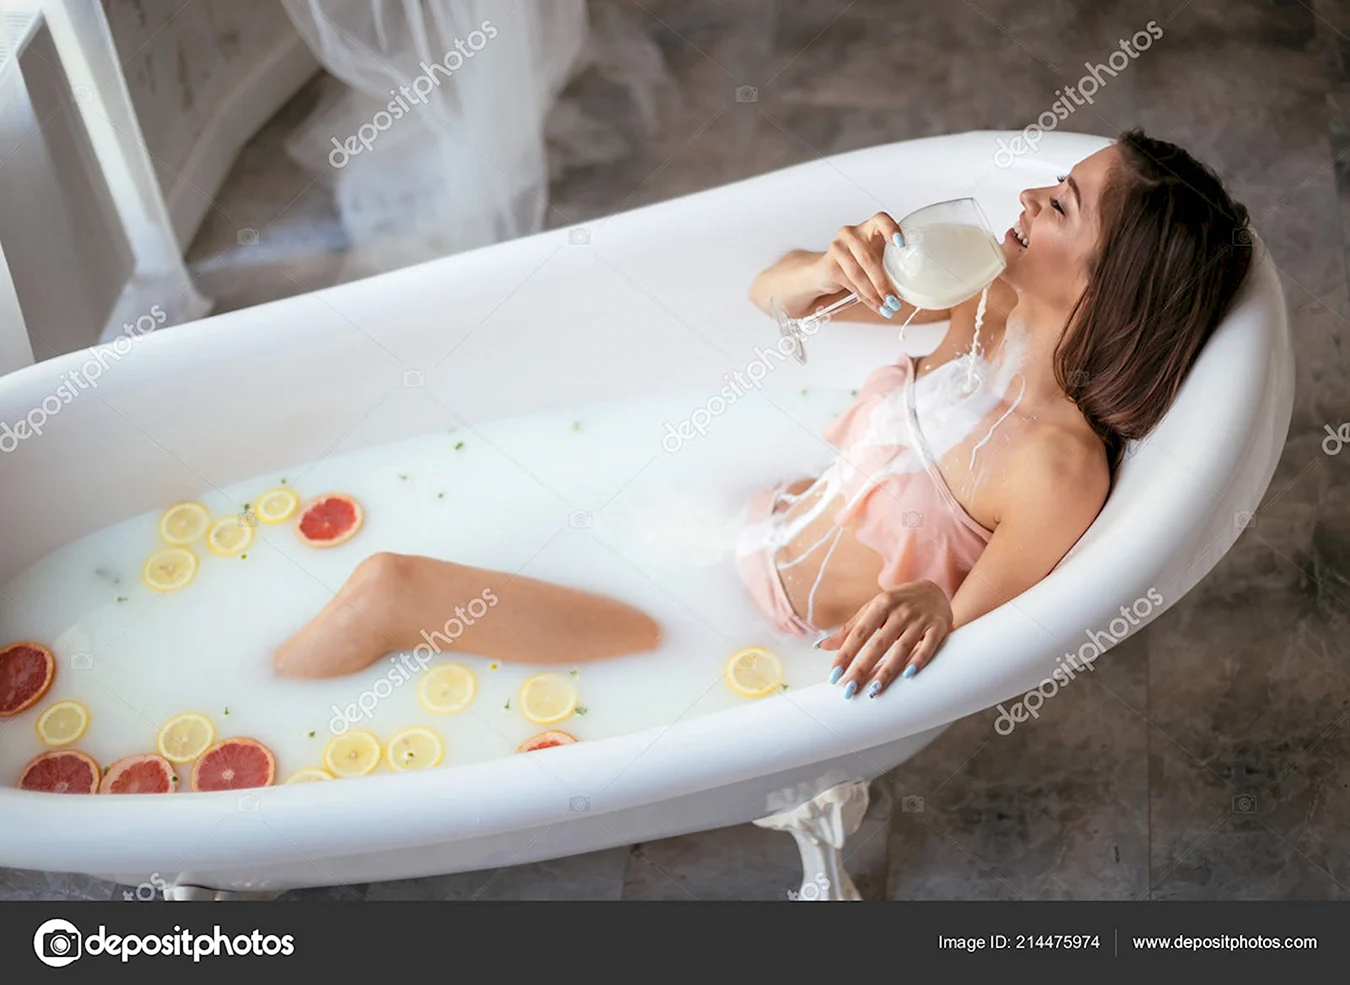 Фотосессия в ванной с молоком